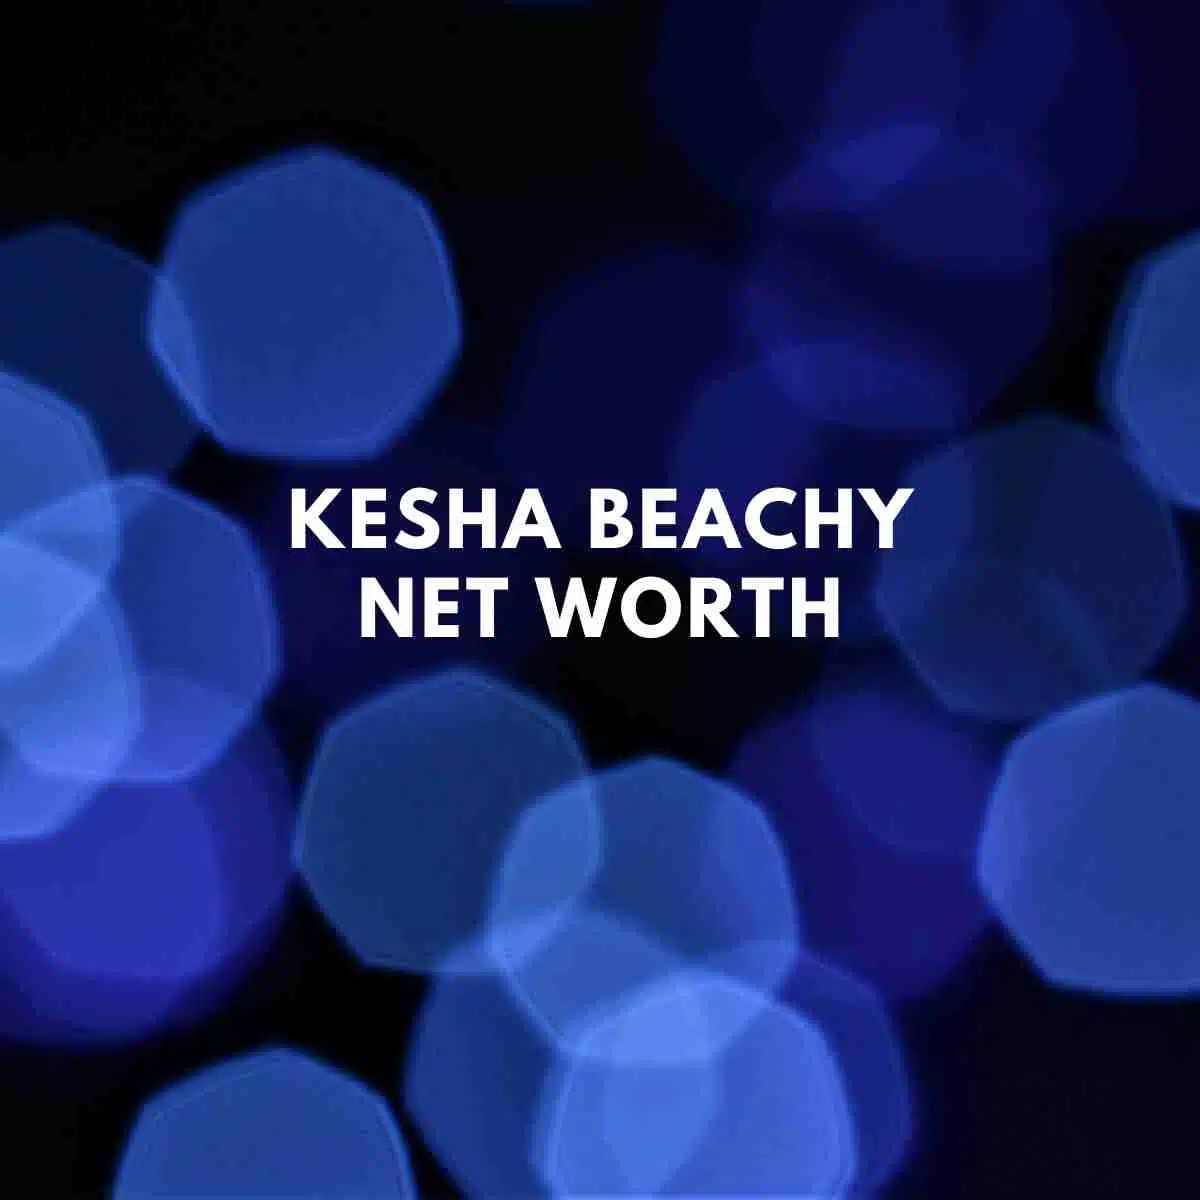 Kesha Beachy net worth